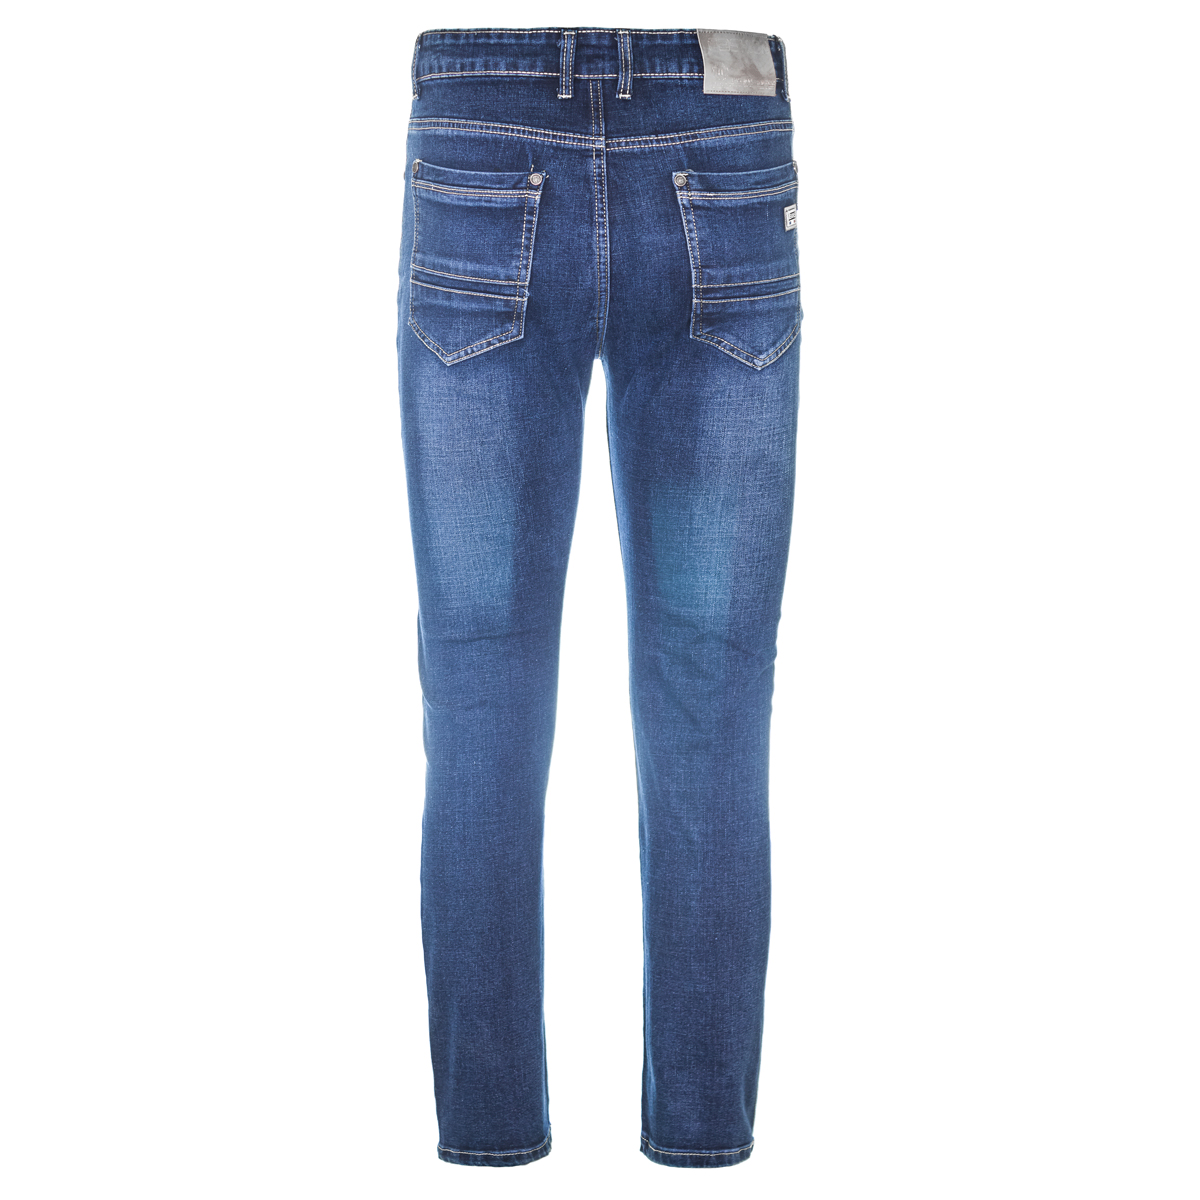 Муж. джинсы арт. 12-0093 Синий р. 38 Китай, размер 38 - фото 3